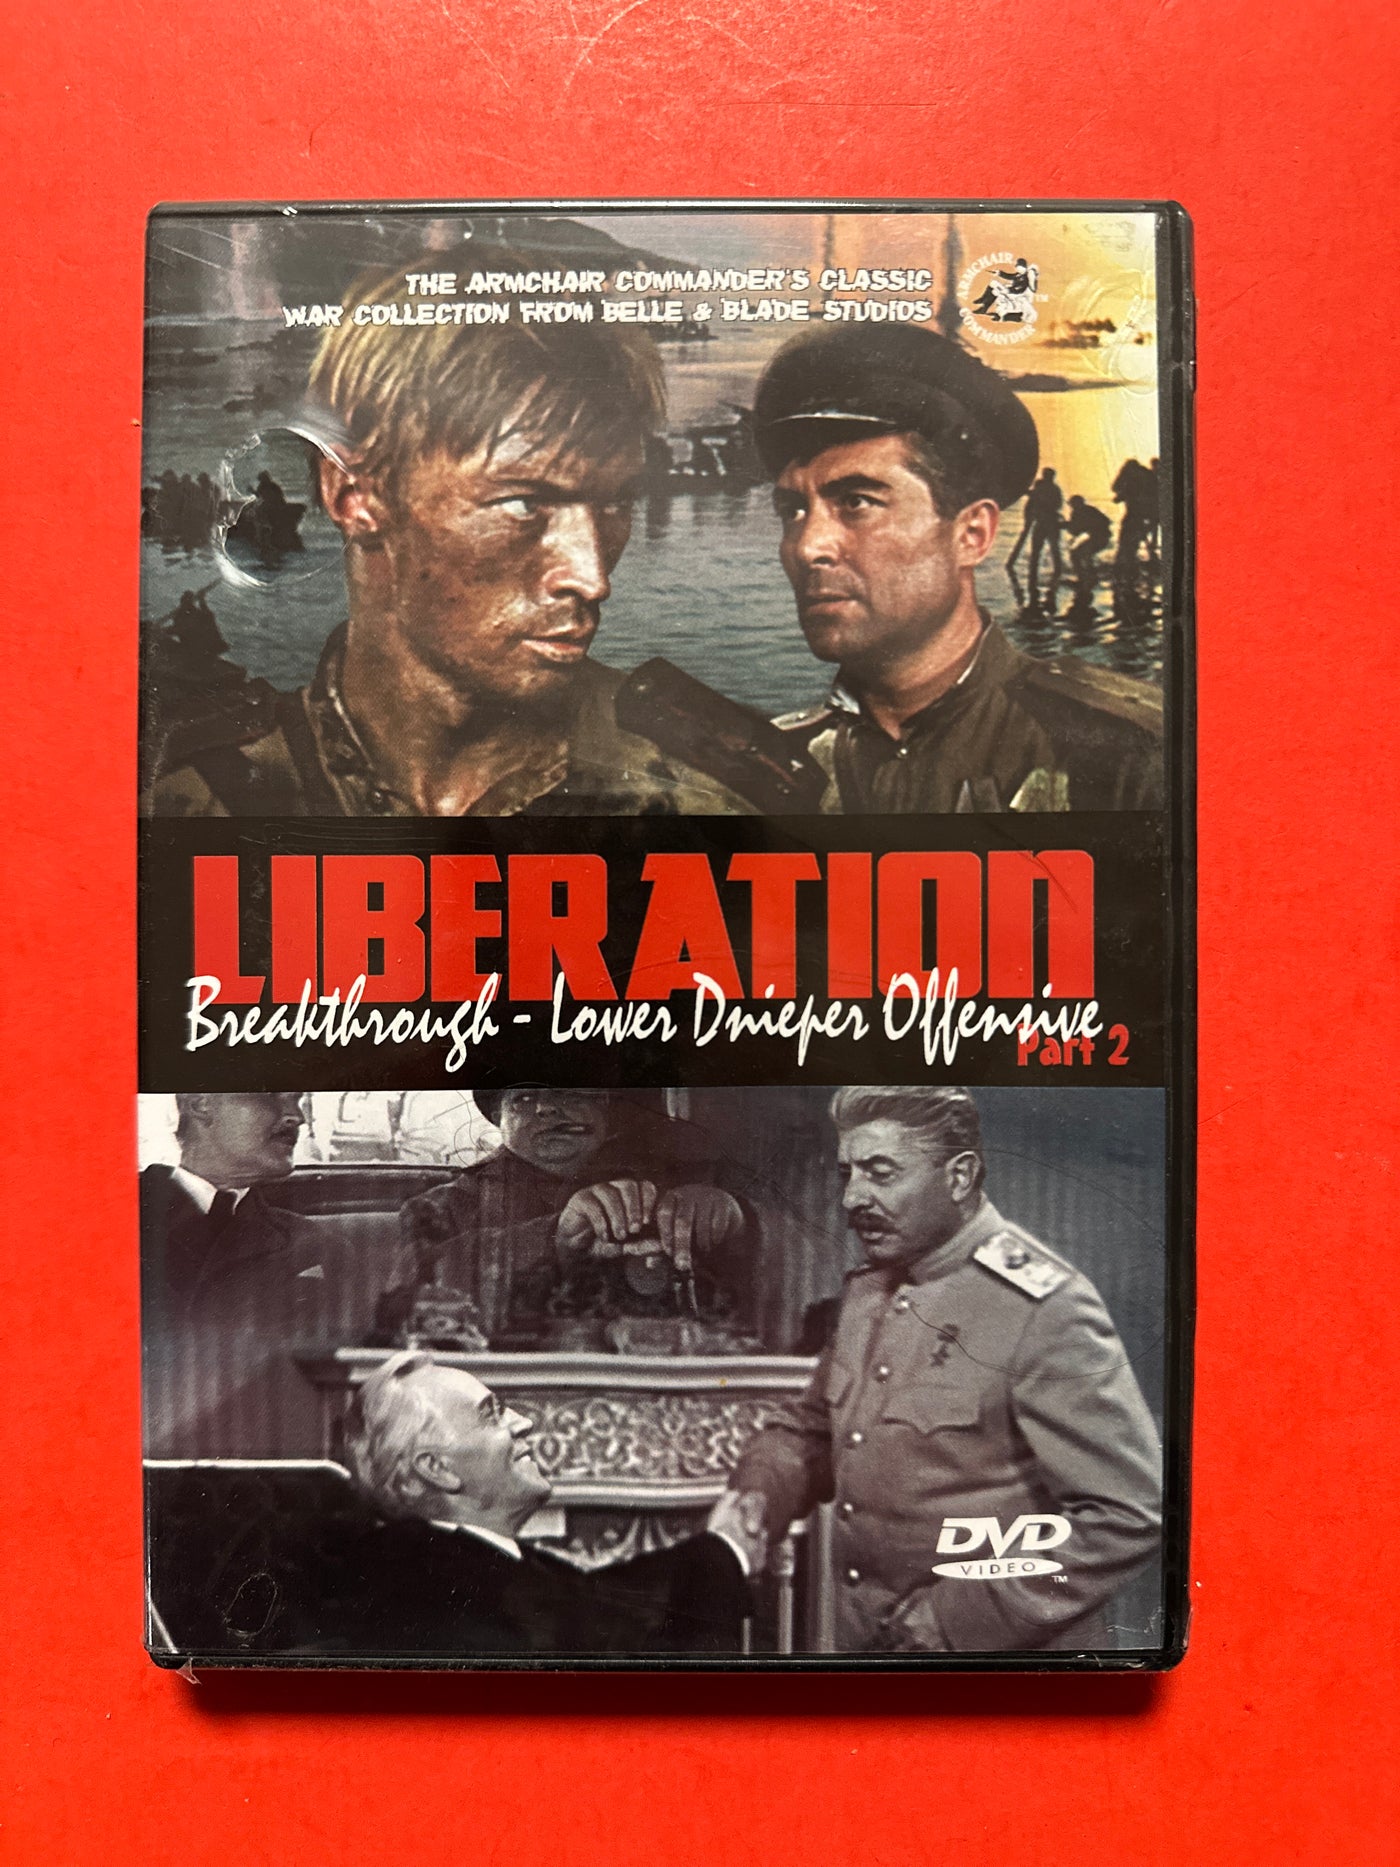 LIBERATION - Breakthrough - Lower Dnieper Offensive Part 2 (Russian war film)